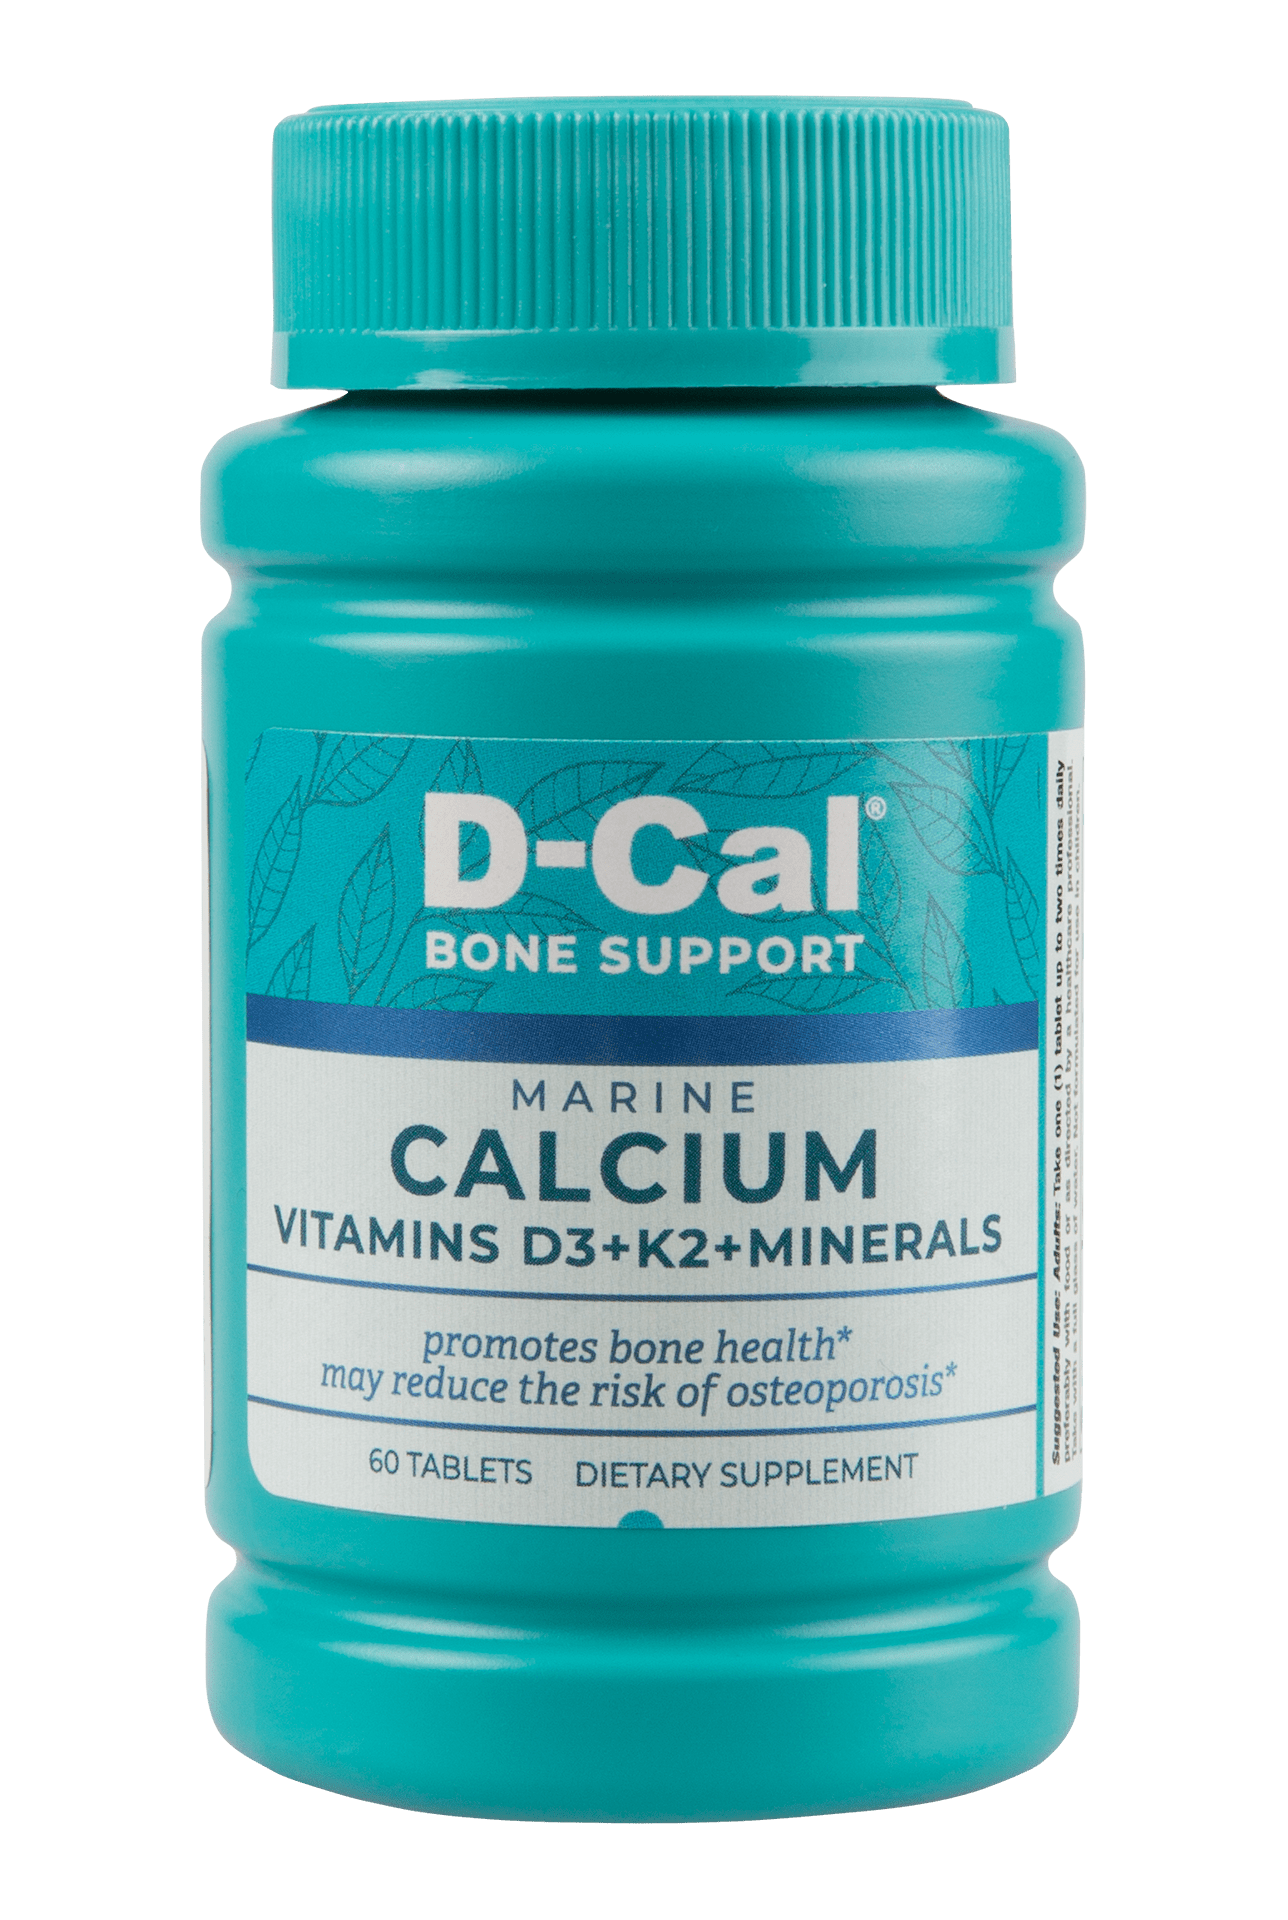 Marine Calcium